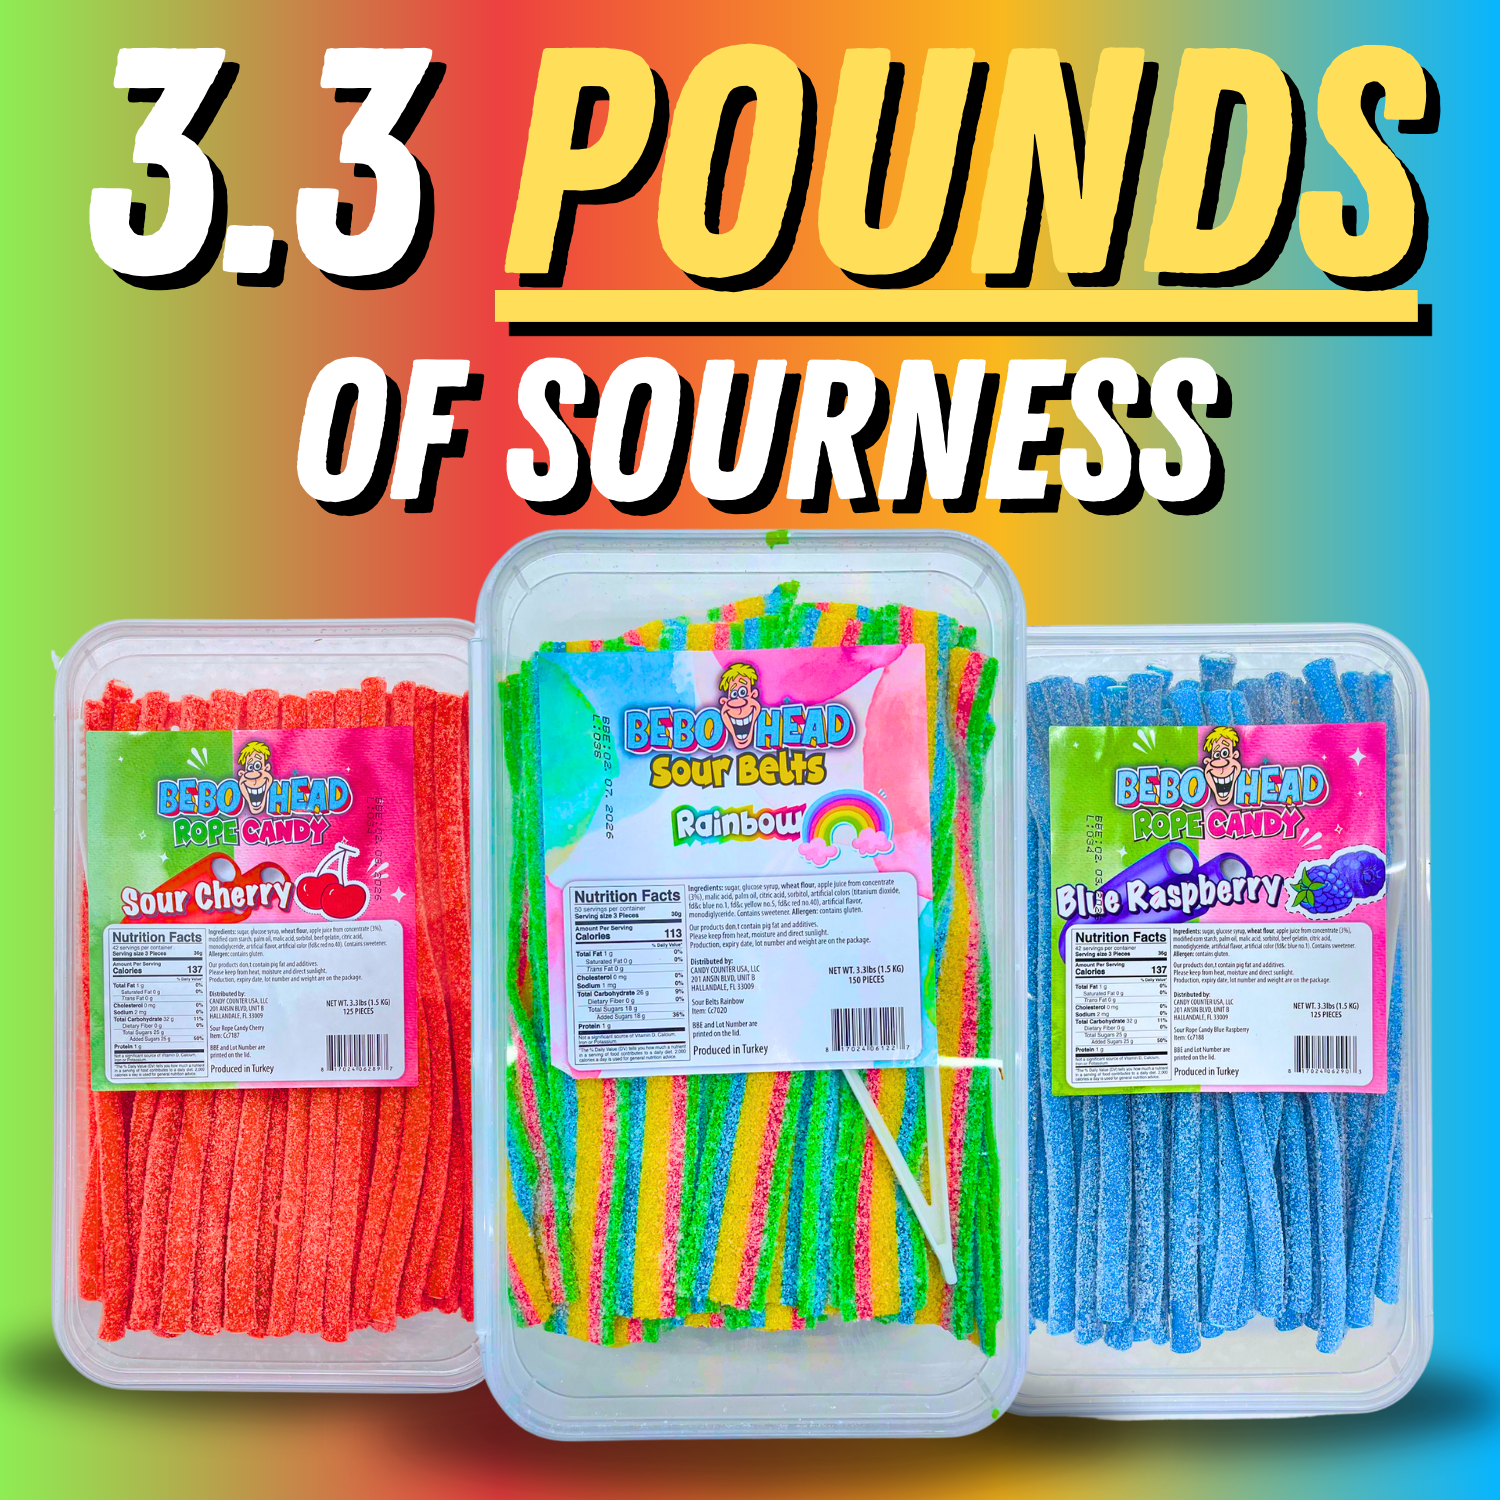 Rainbow Sour Belts - 3.3 Pounds